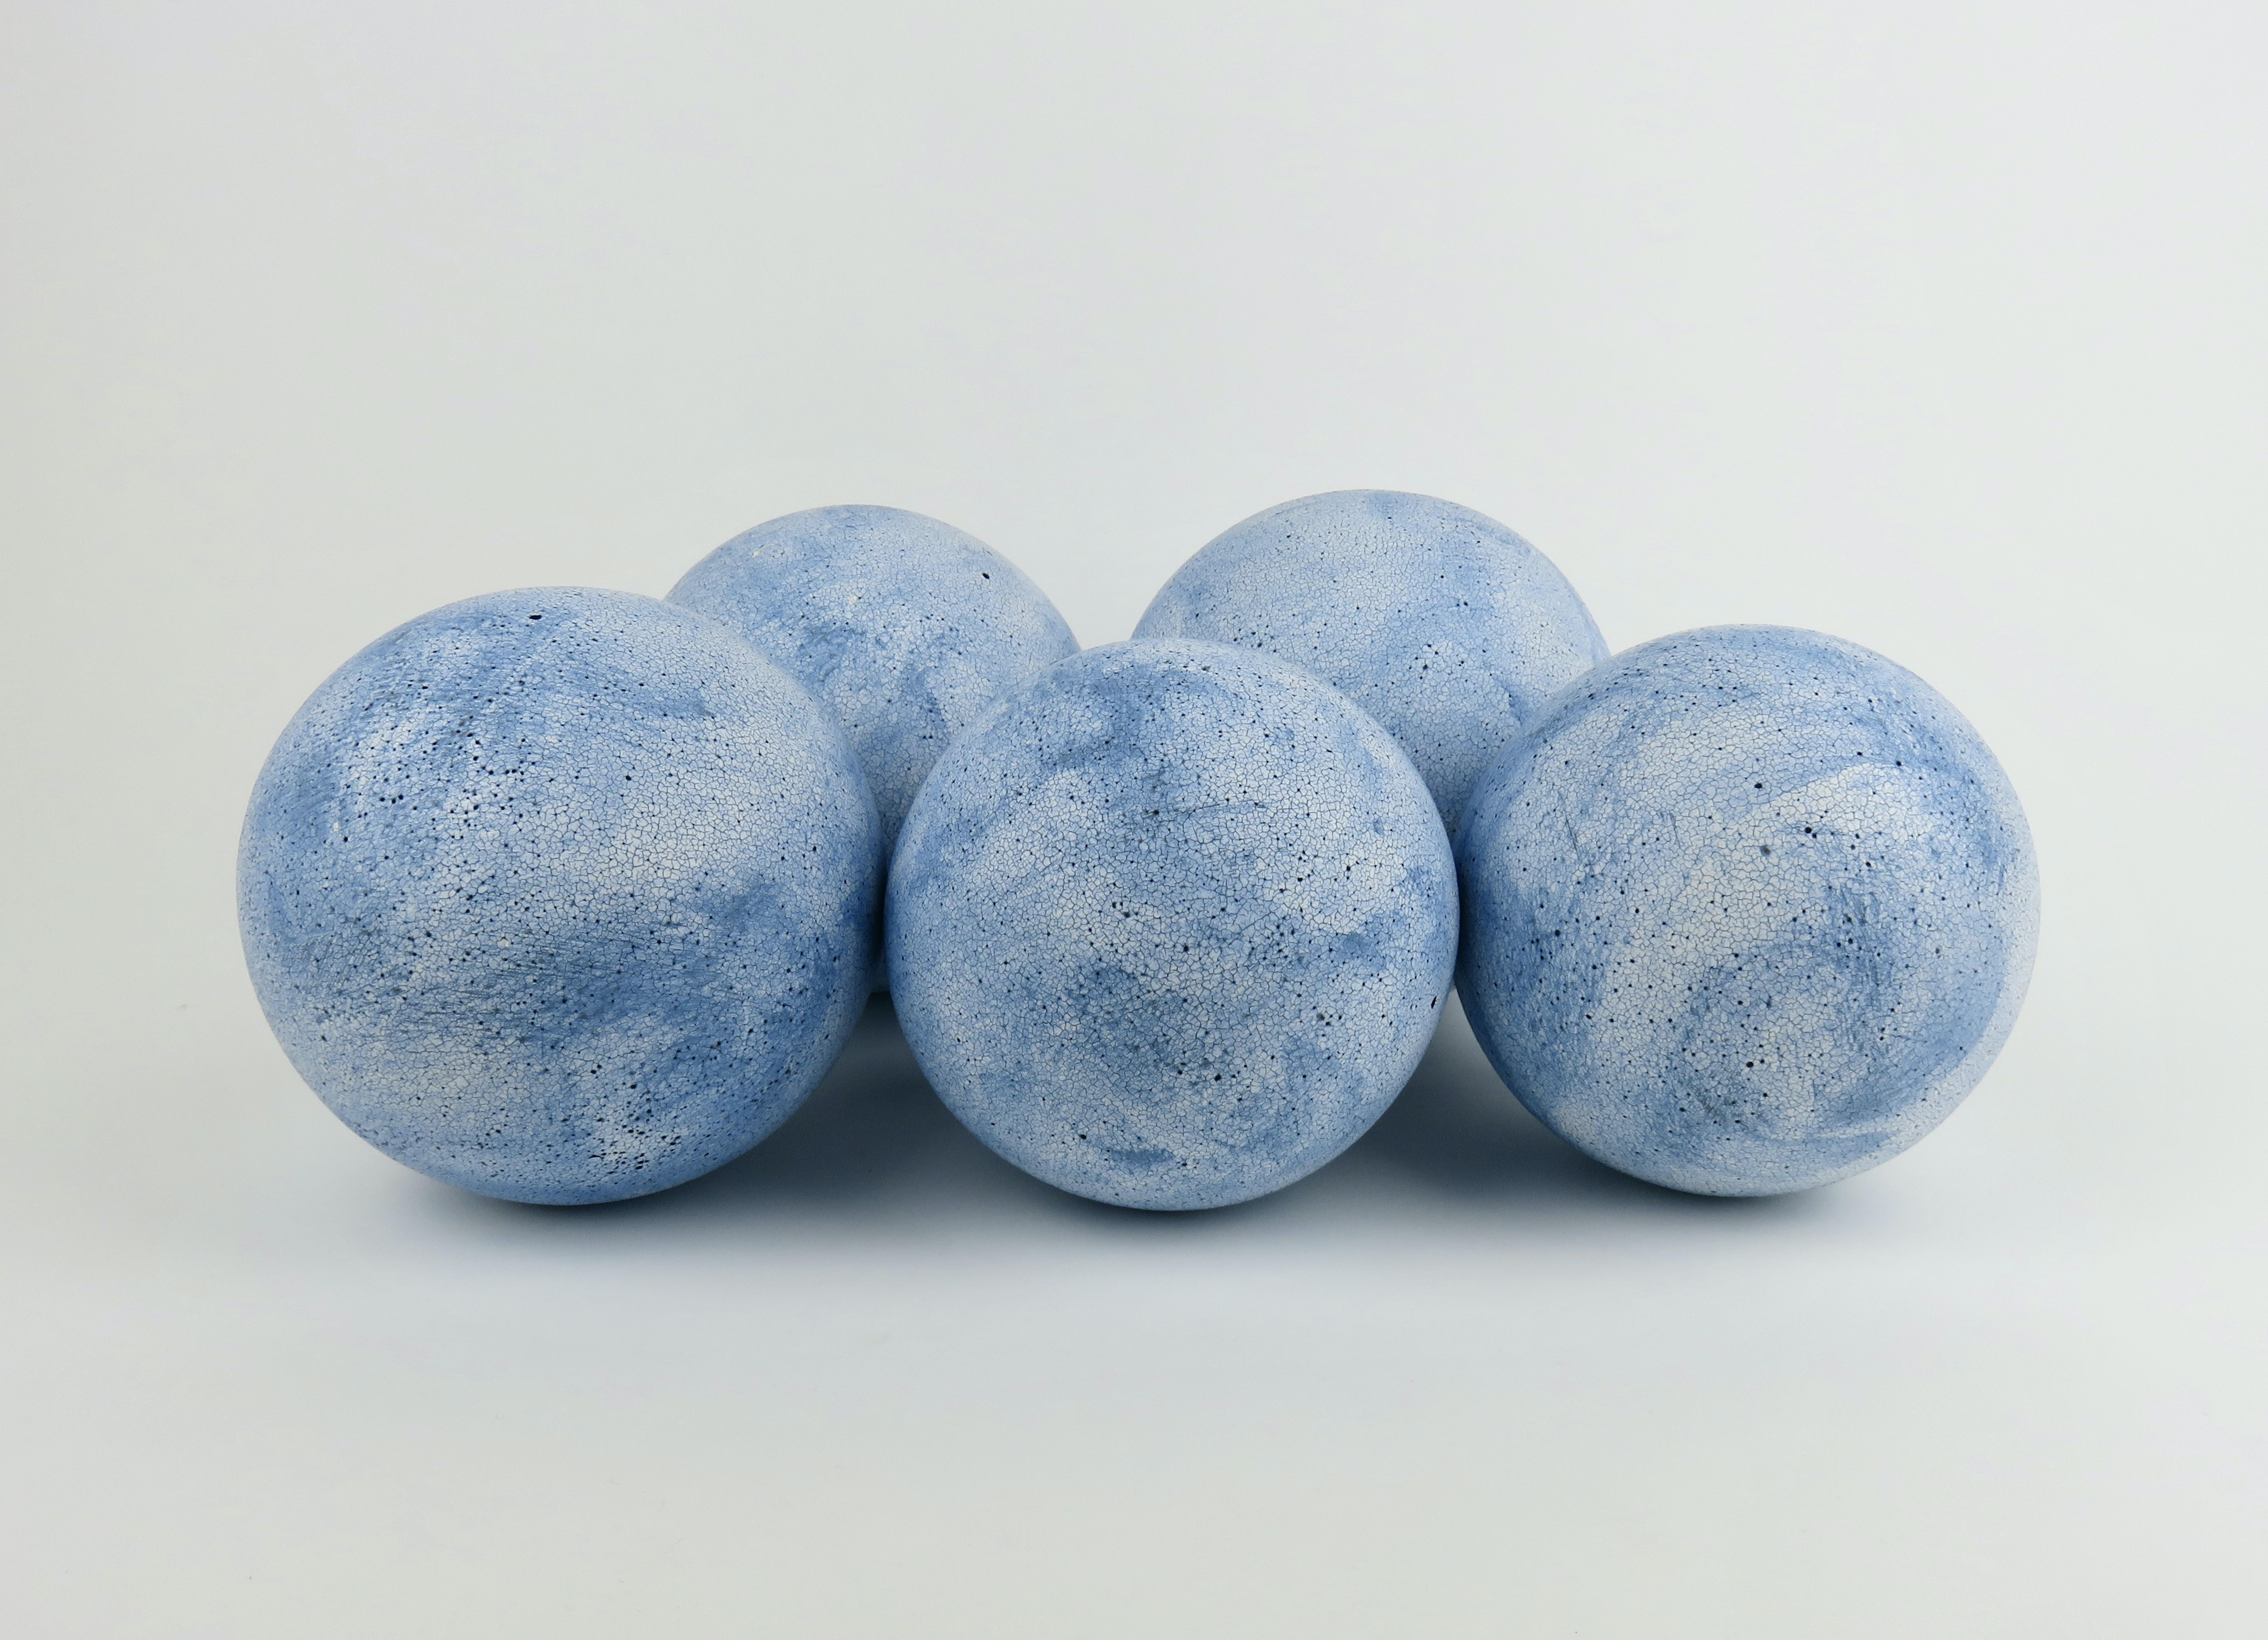 Cinq sphères bleu ciel, fabriquées à la main en grès céramique blanc. D'abord formé comme une sphère d'argile solide, puis évidé et rattaché. Après avoir beaucoup pataugé, gratté et rasé pour parfaire les formes, on les laisse sécher. Lorsqu'elles